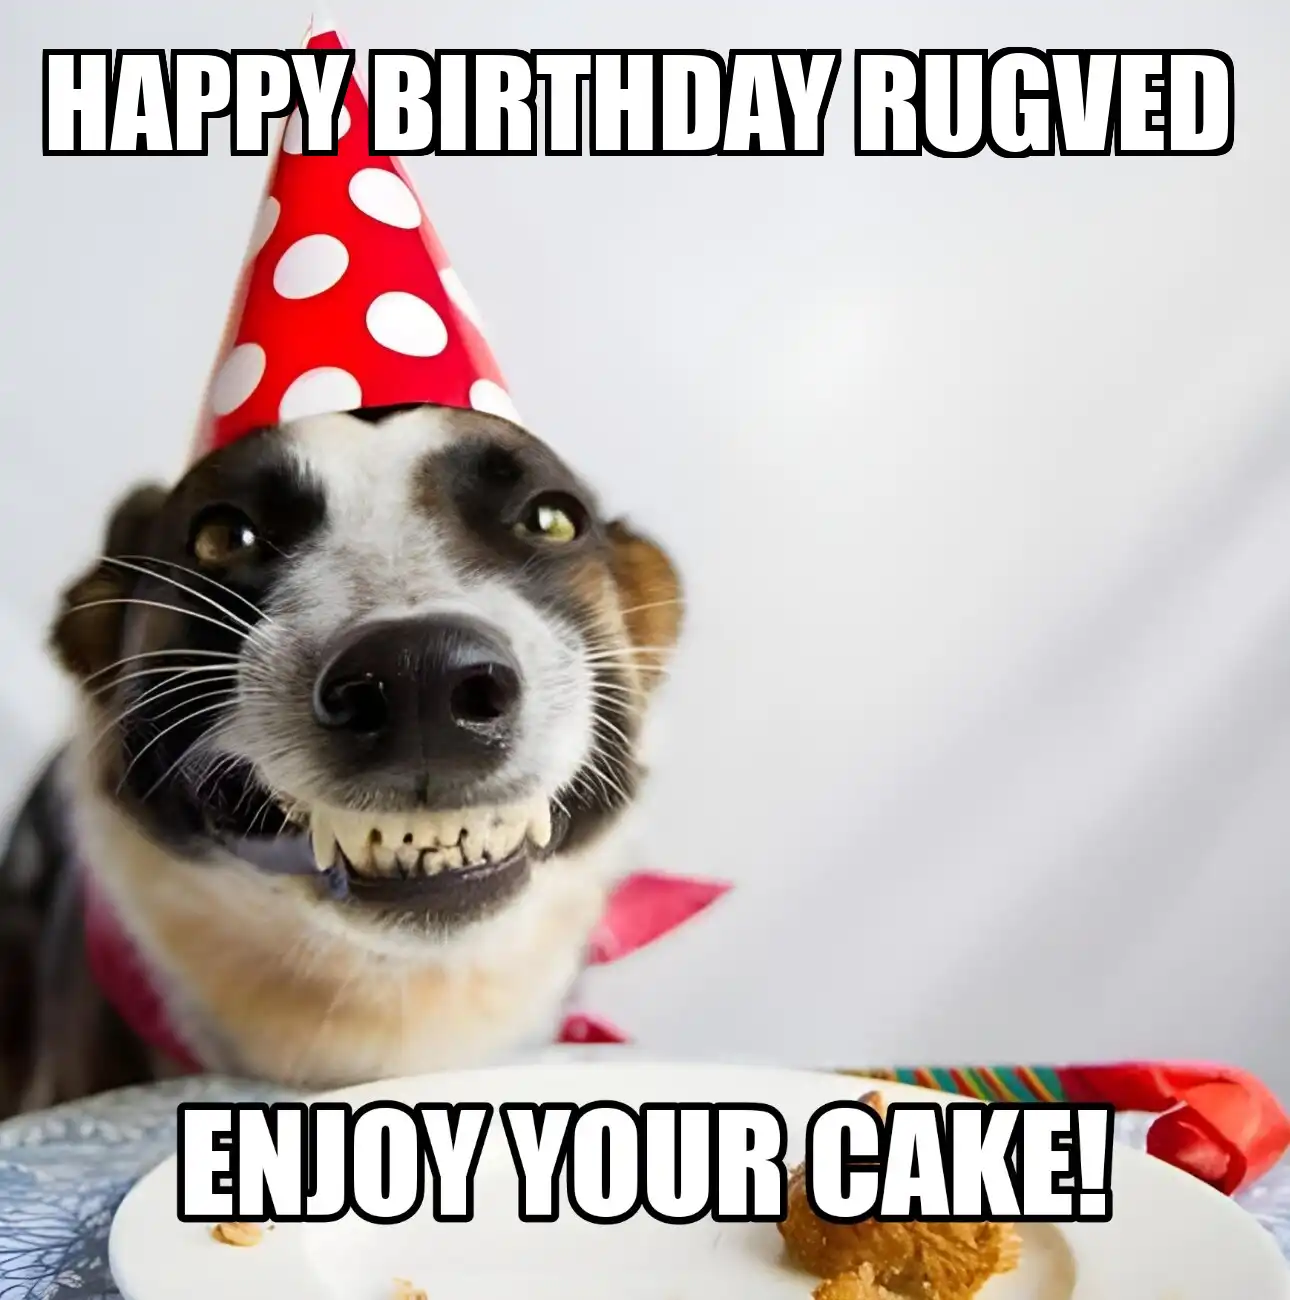 Happy Birthday Rugved Enjoy Your Cake Dog Meme